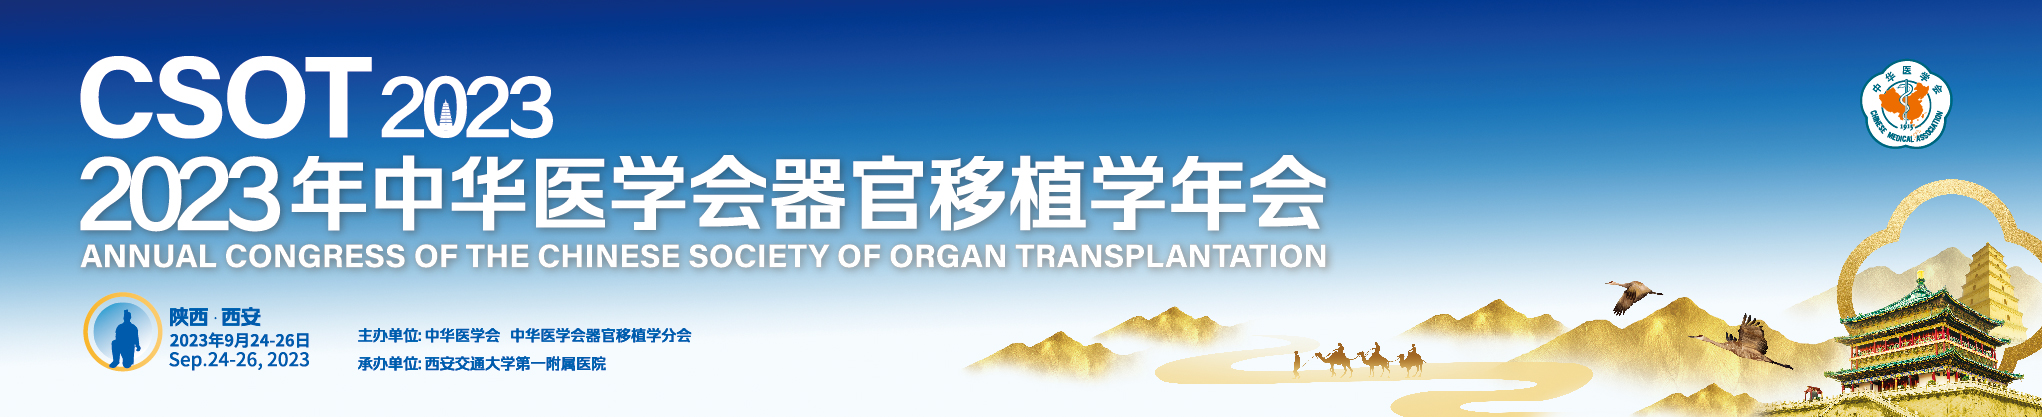 2023年中华医学会器官移植学年会